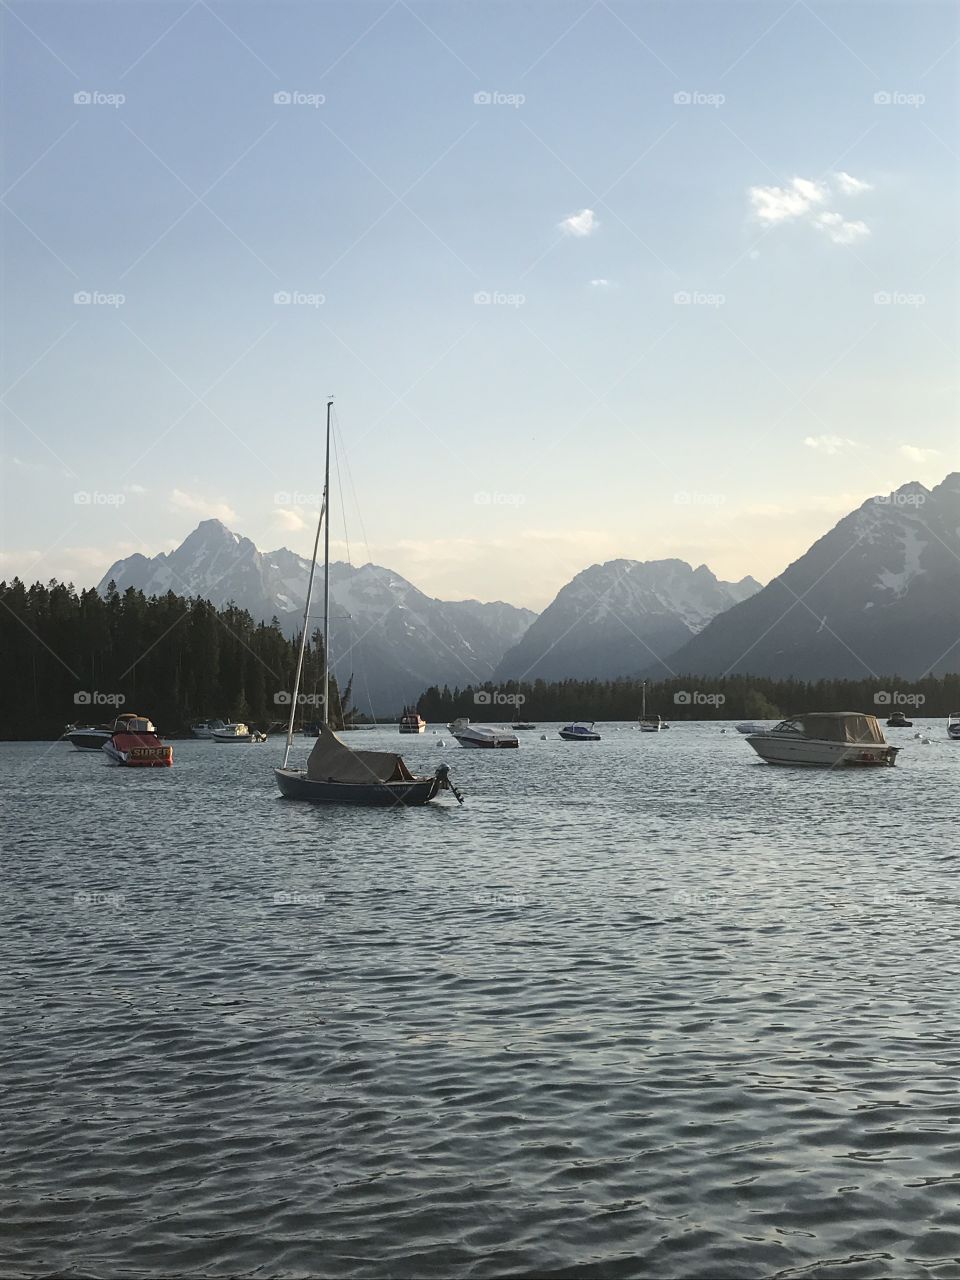 Boats on a lake
